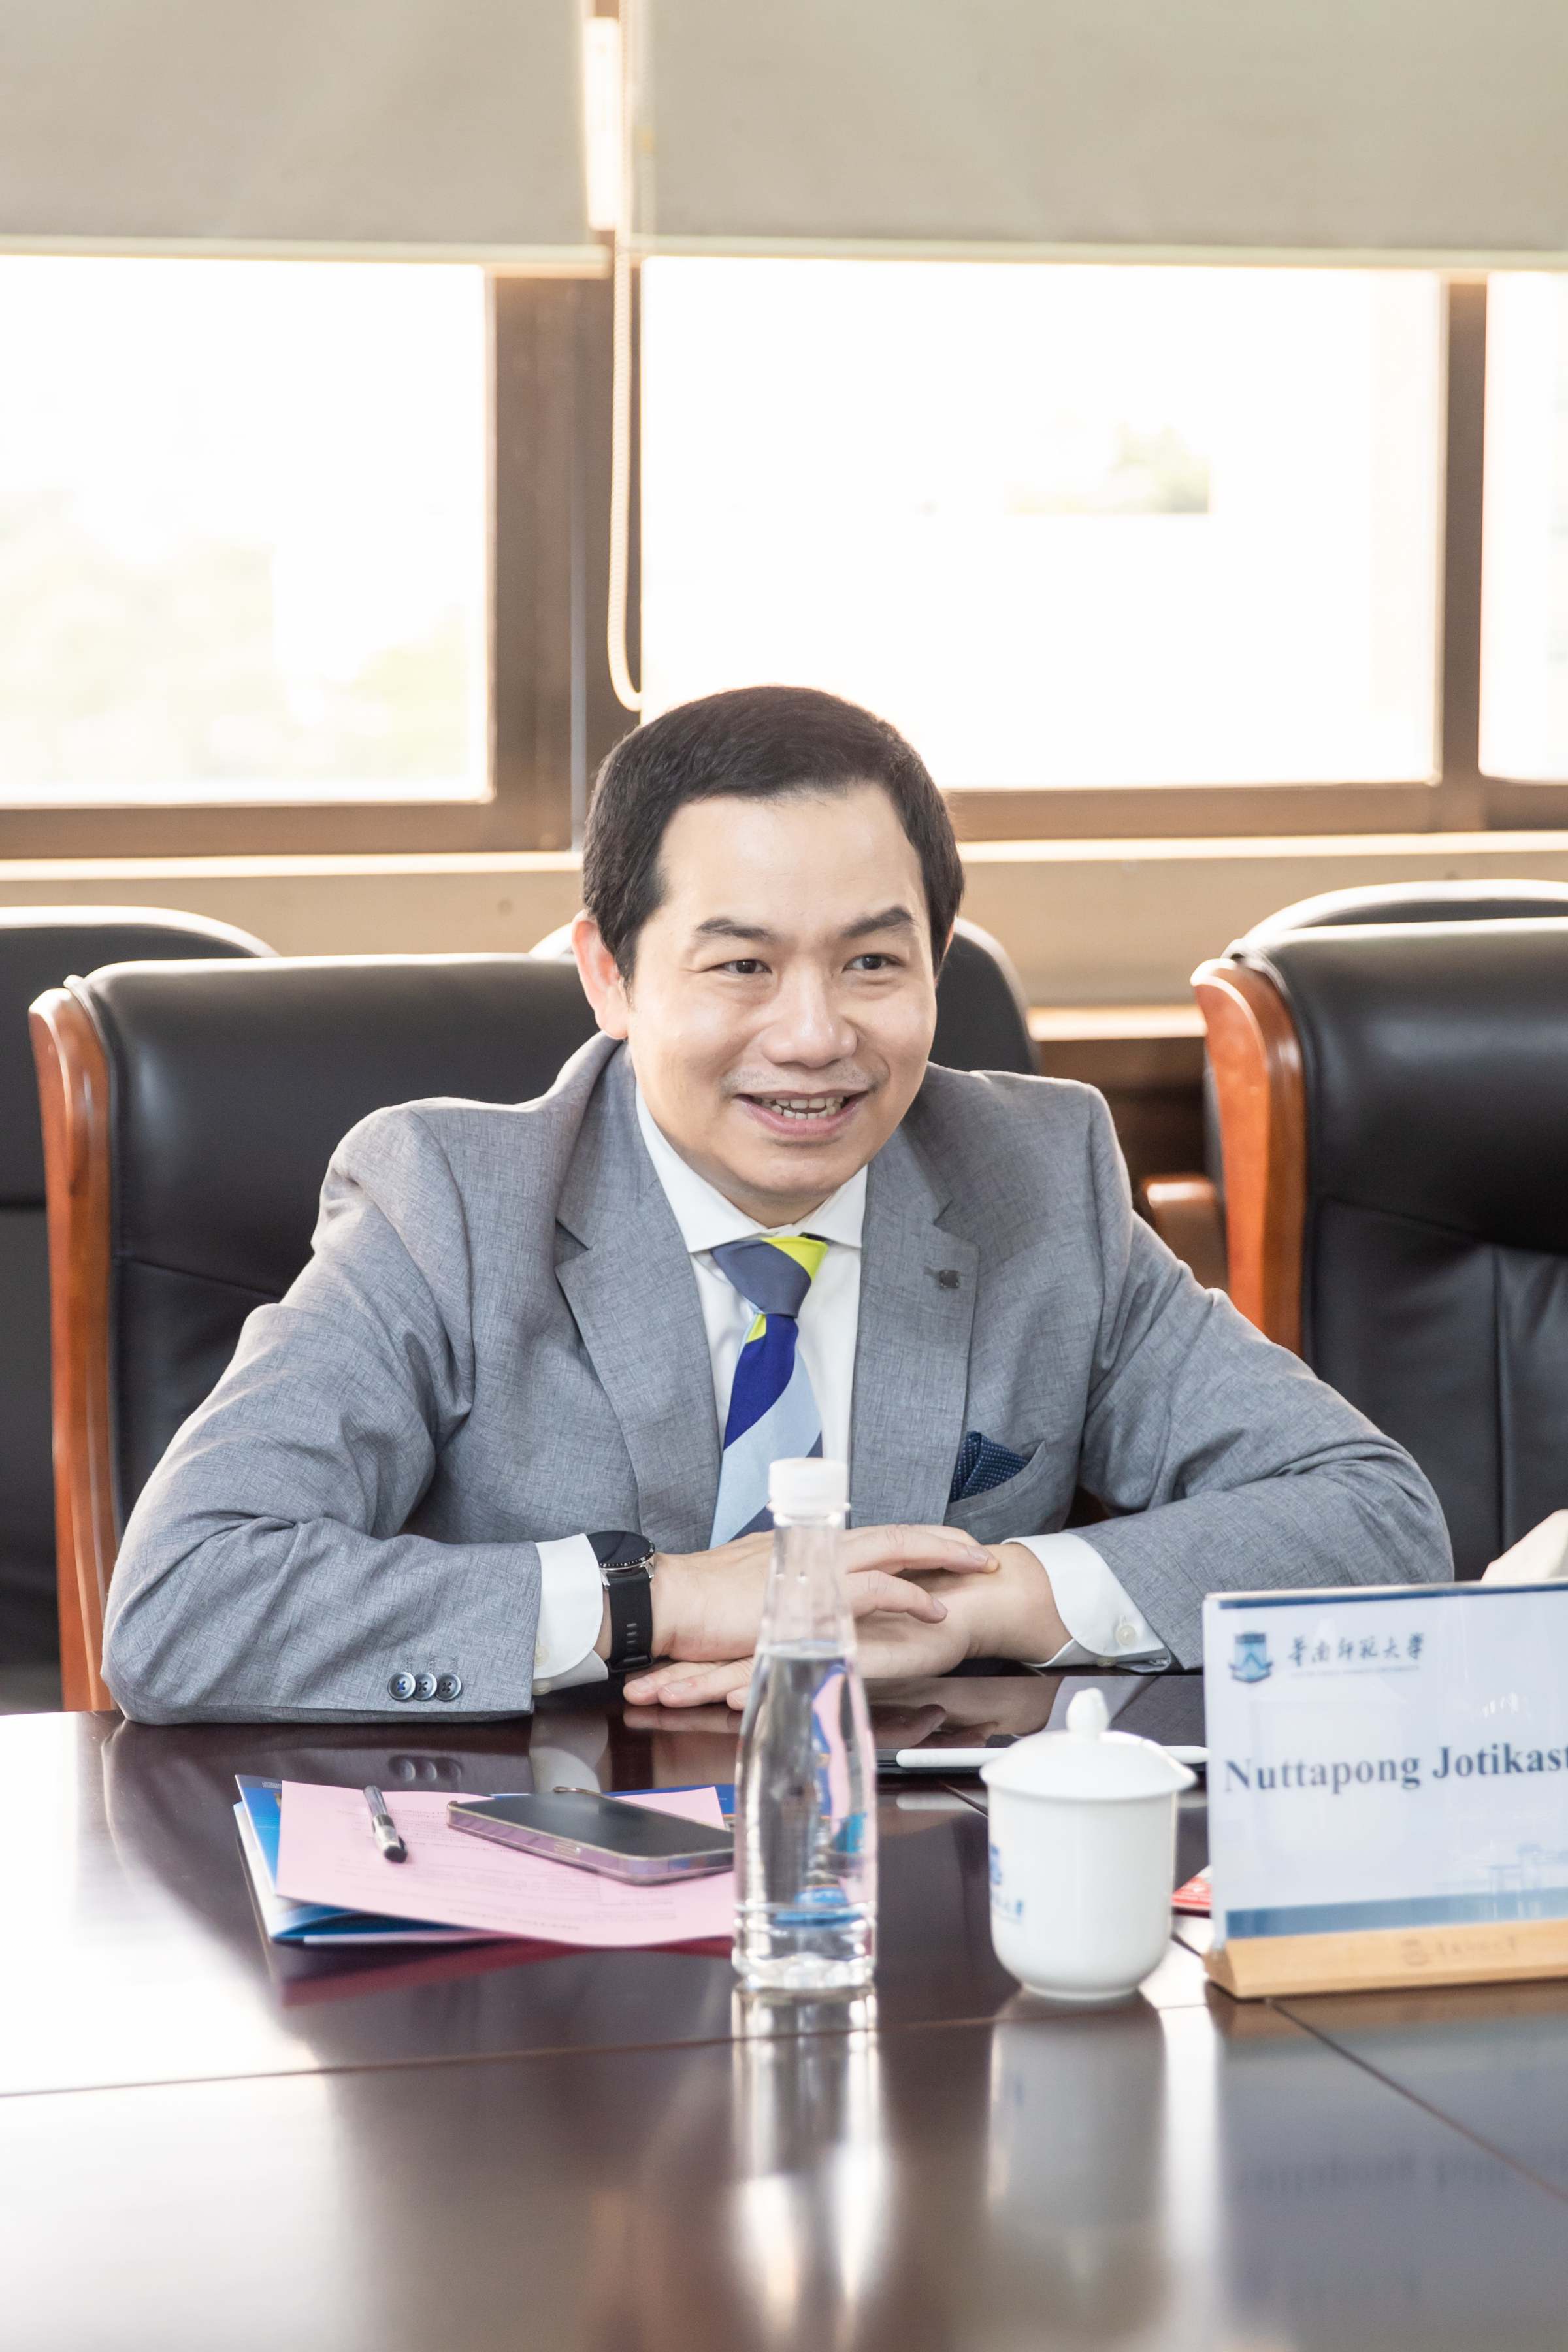 国际学院院长Nuttapong Jotikasthira介绍泰国兰塔纳功欣皇家理工大学情况